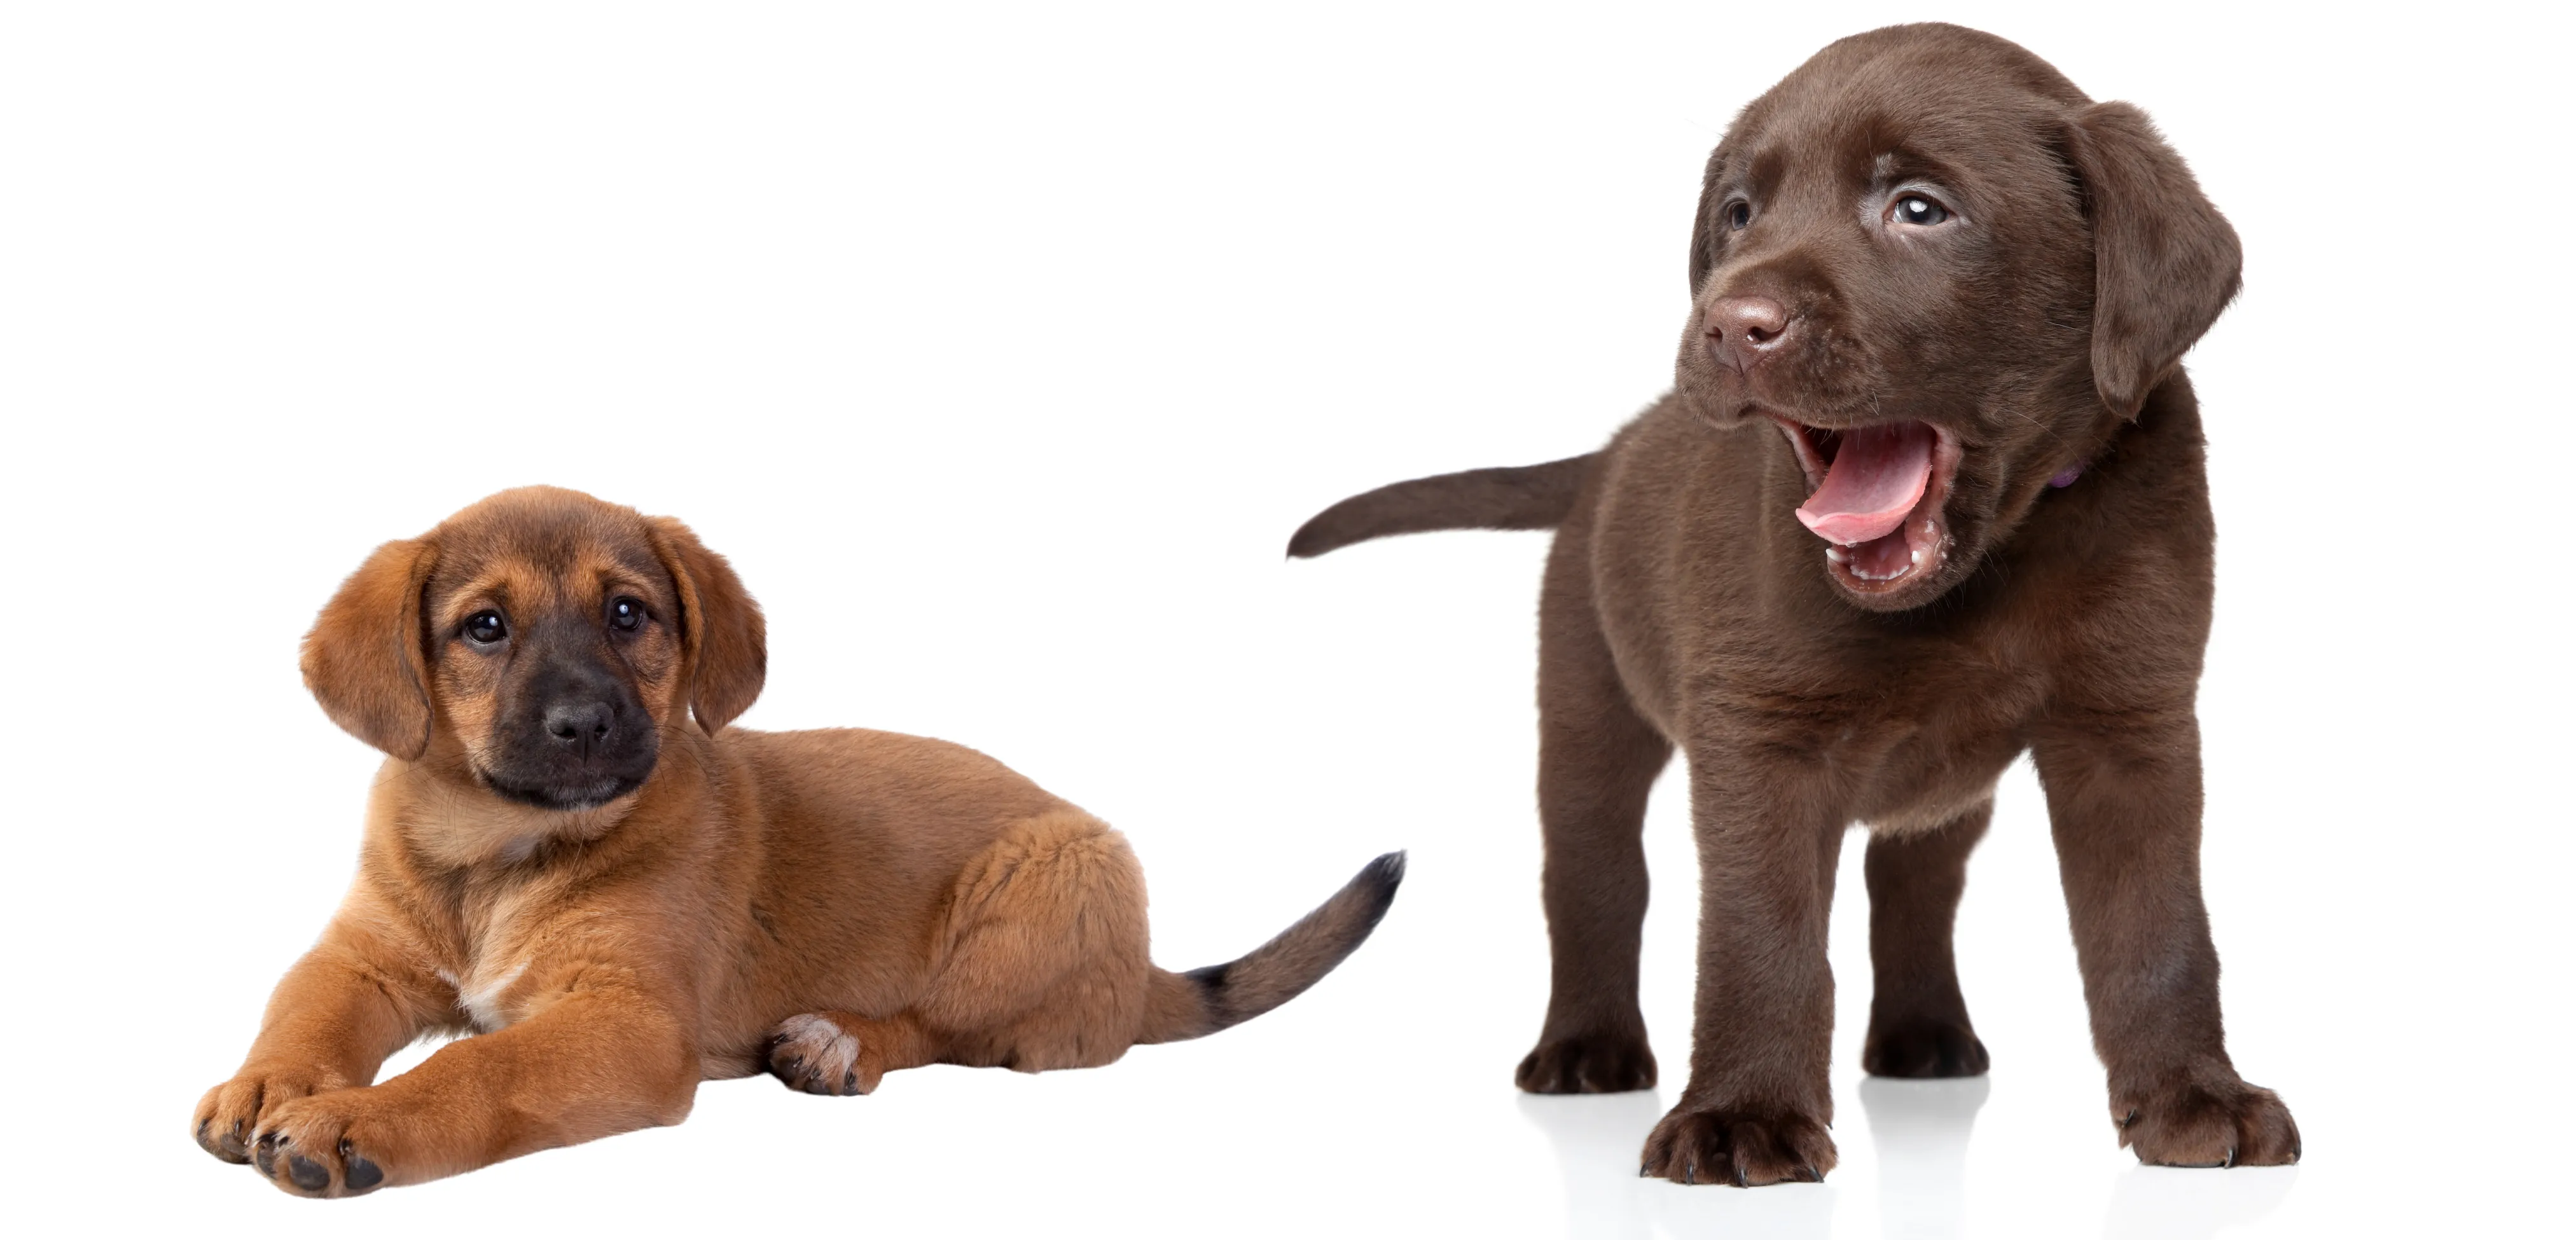 Chocolate lab puppy yawn, mstiff puppy down, Newman's Dog Training online dog training academy